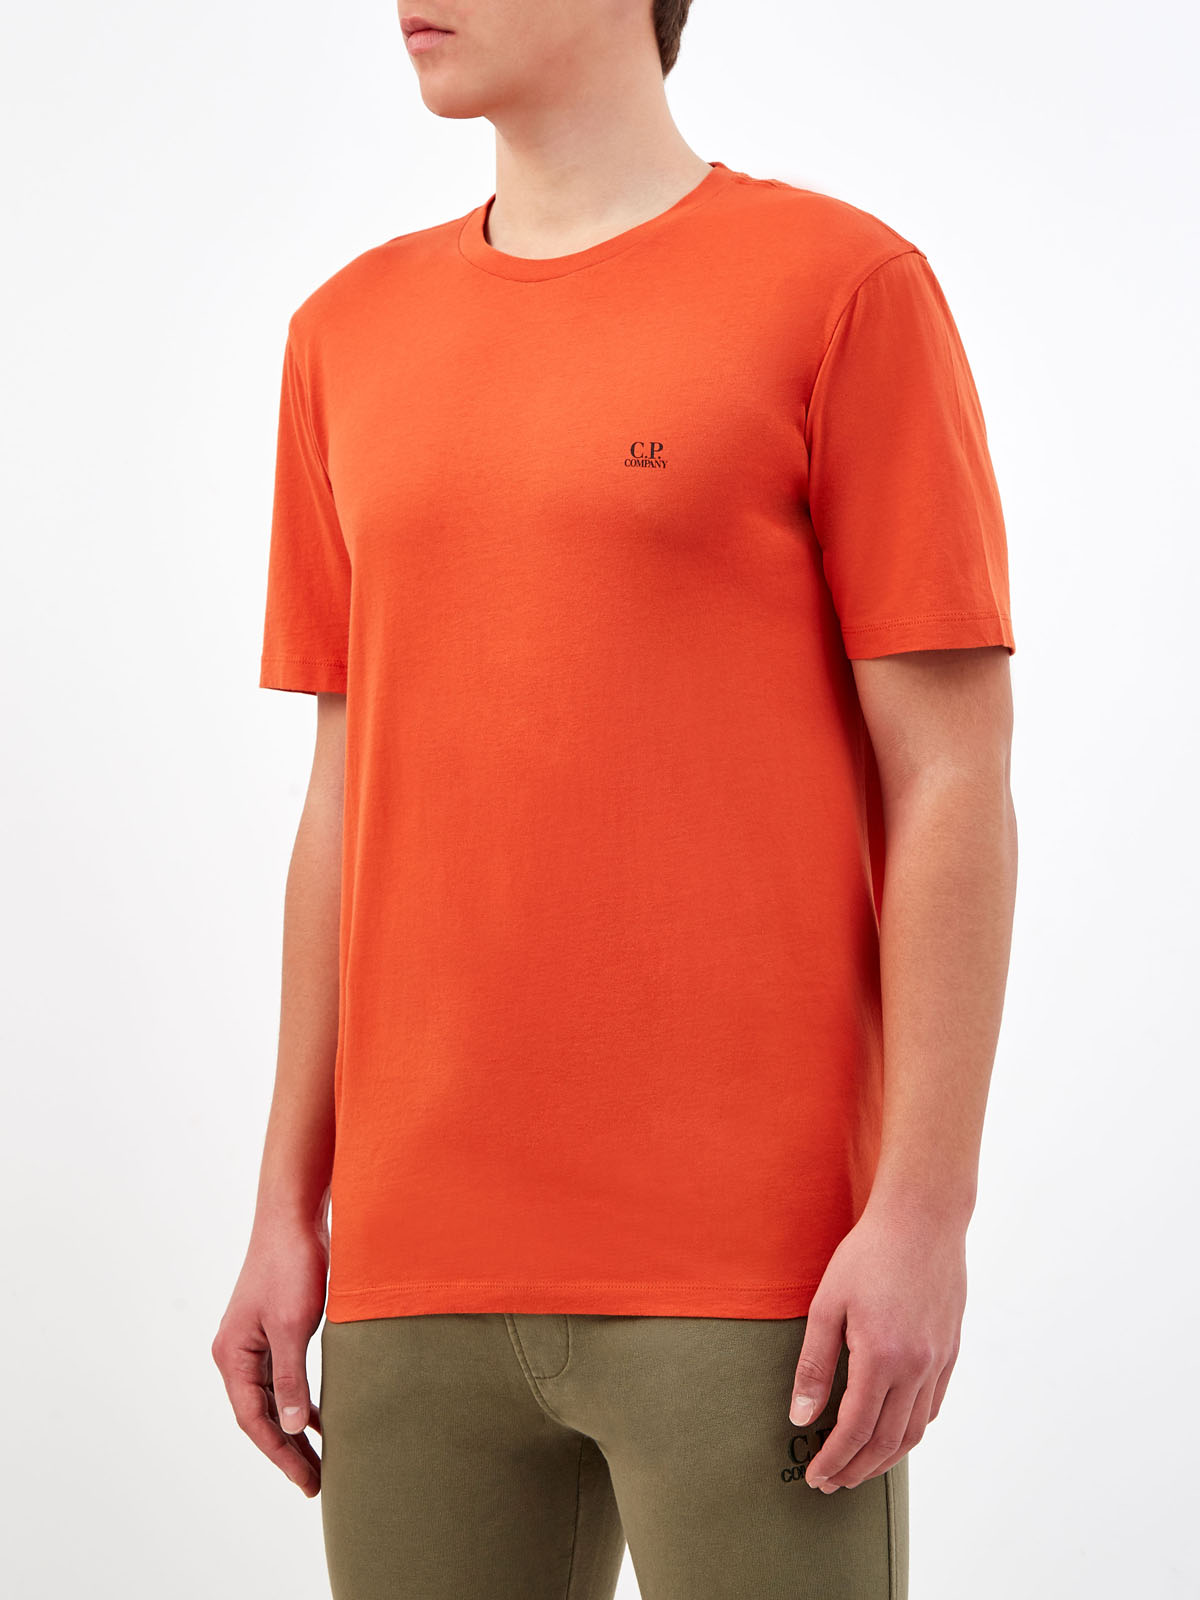 Хлопковая футболка с принтом Goggle Hood и логотипом C.P.COMPANY, цвет оранжевый, размер S;L;XL;2XL - фото 3